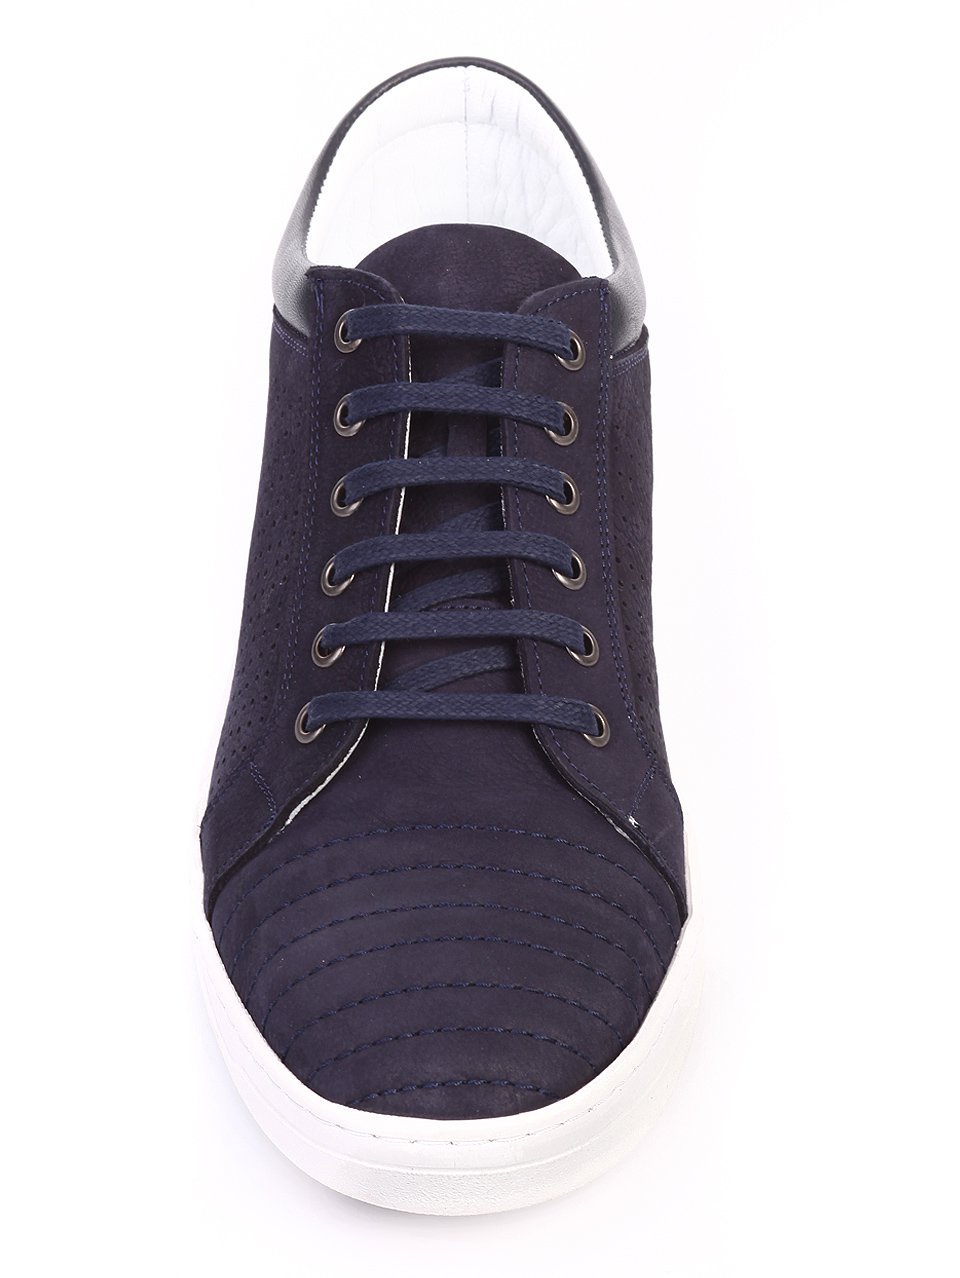 Ежедневни мъжки обувки от естествена кожа в виньо 7AT-17610 dk.blue